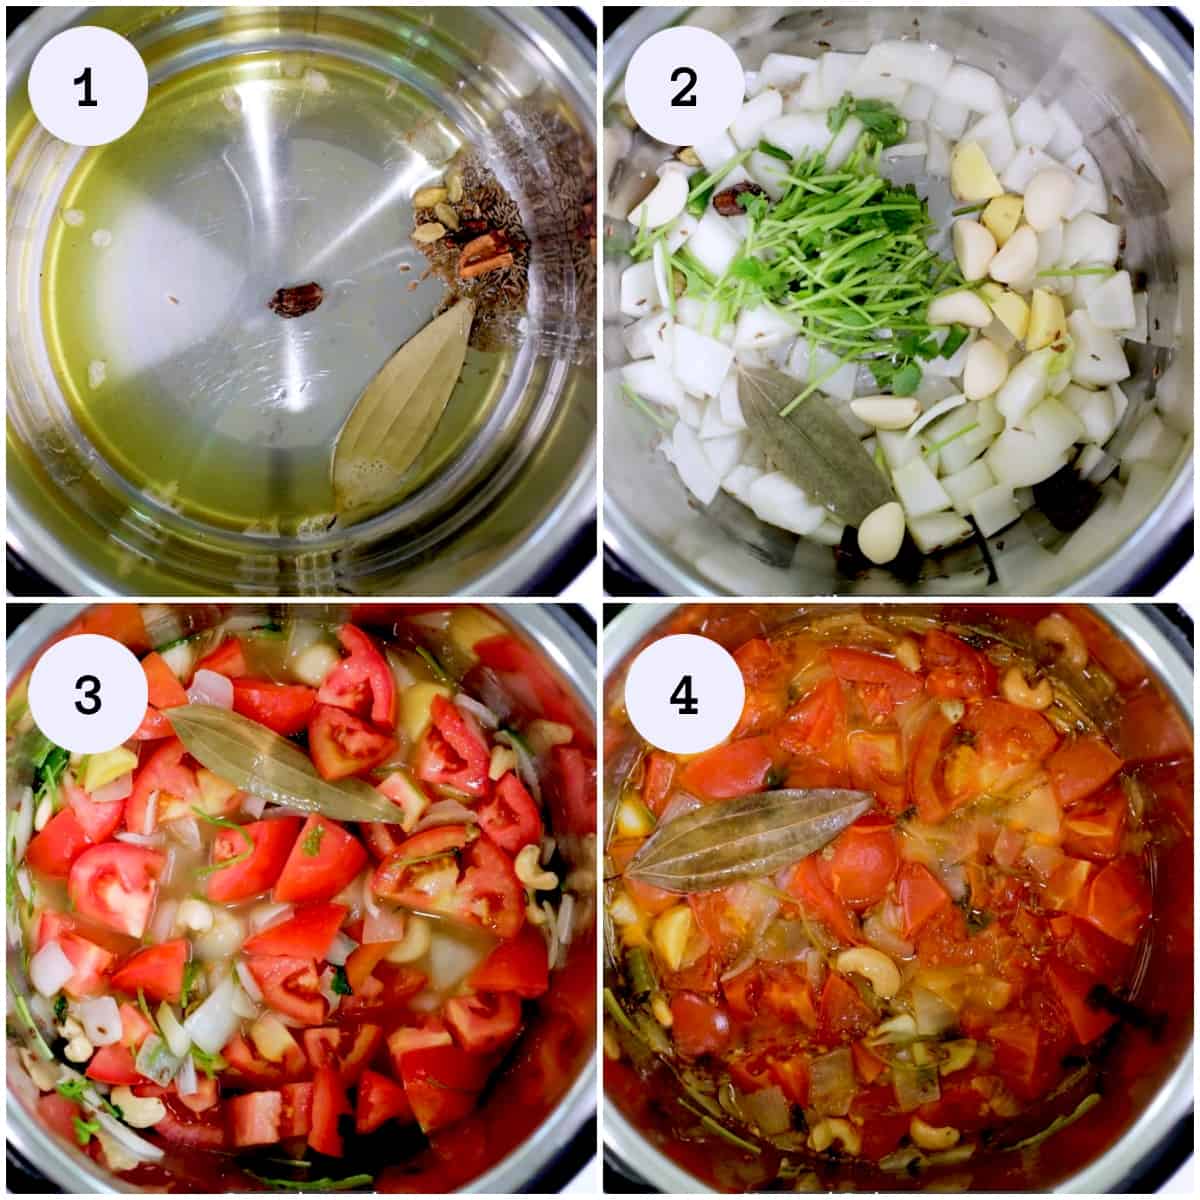 Steps for making Shahi Paneer gravy in Instant Pot